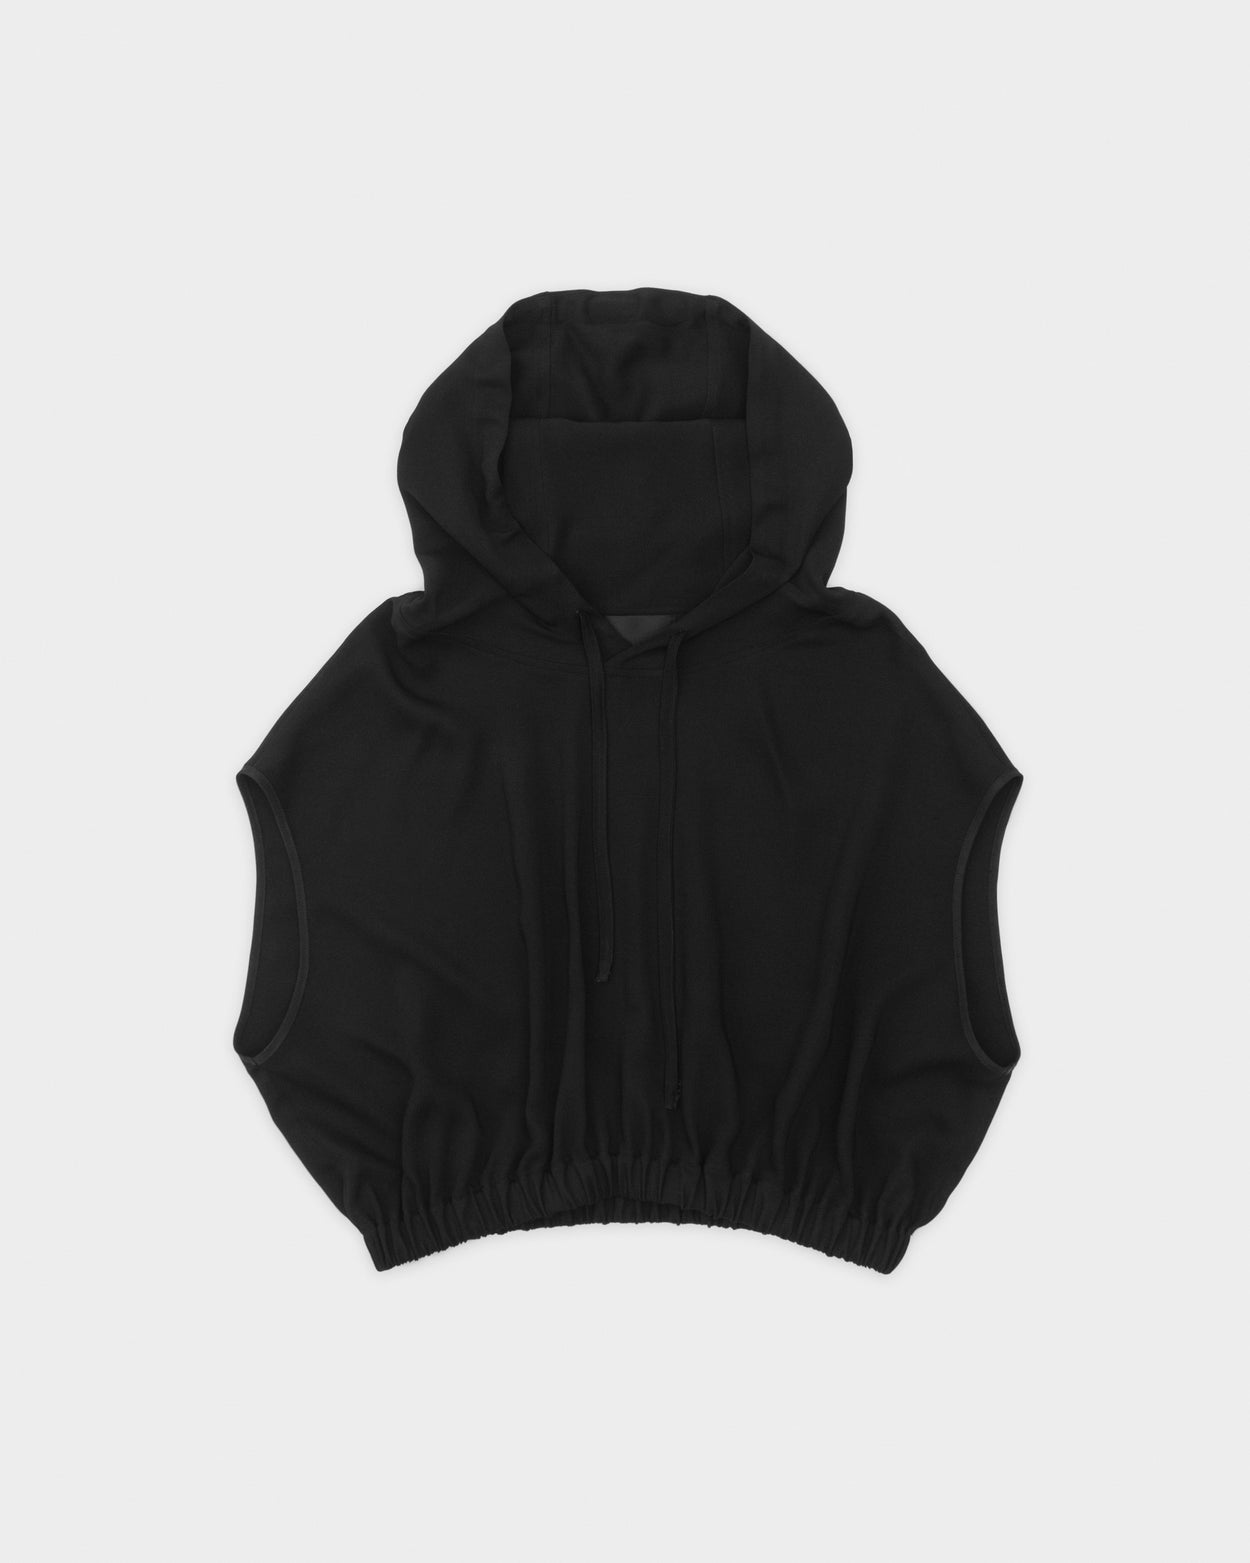 Cropped Sleevless hoodie